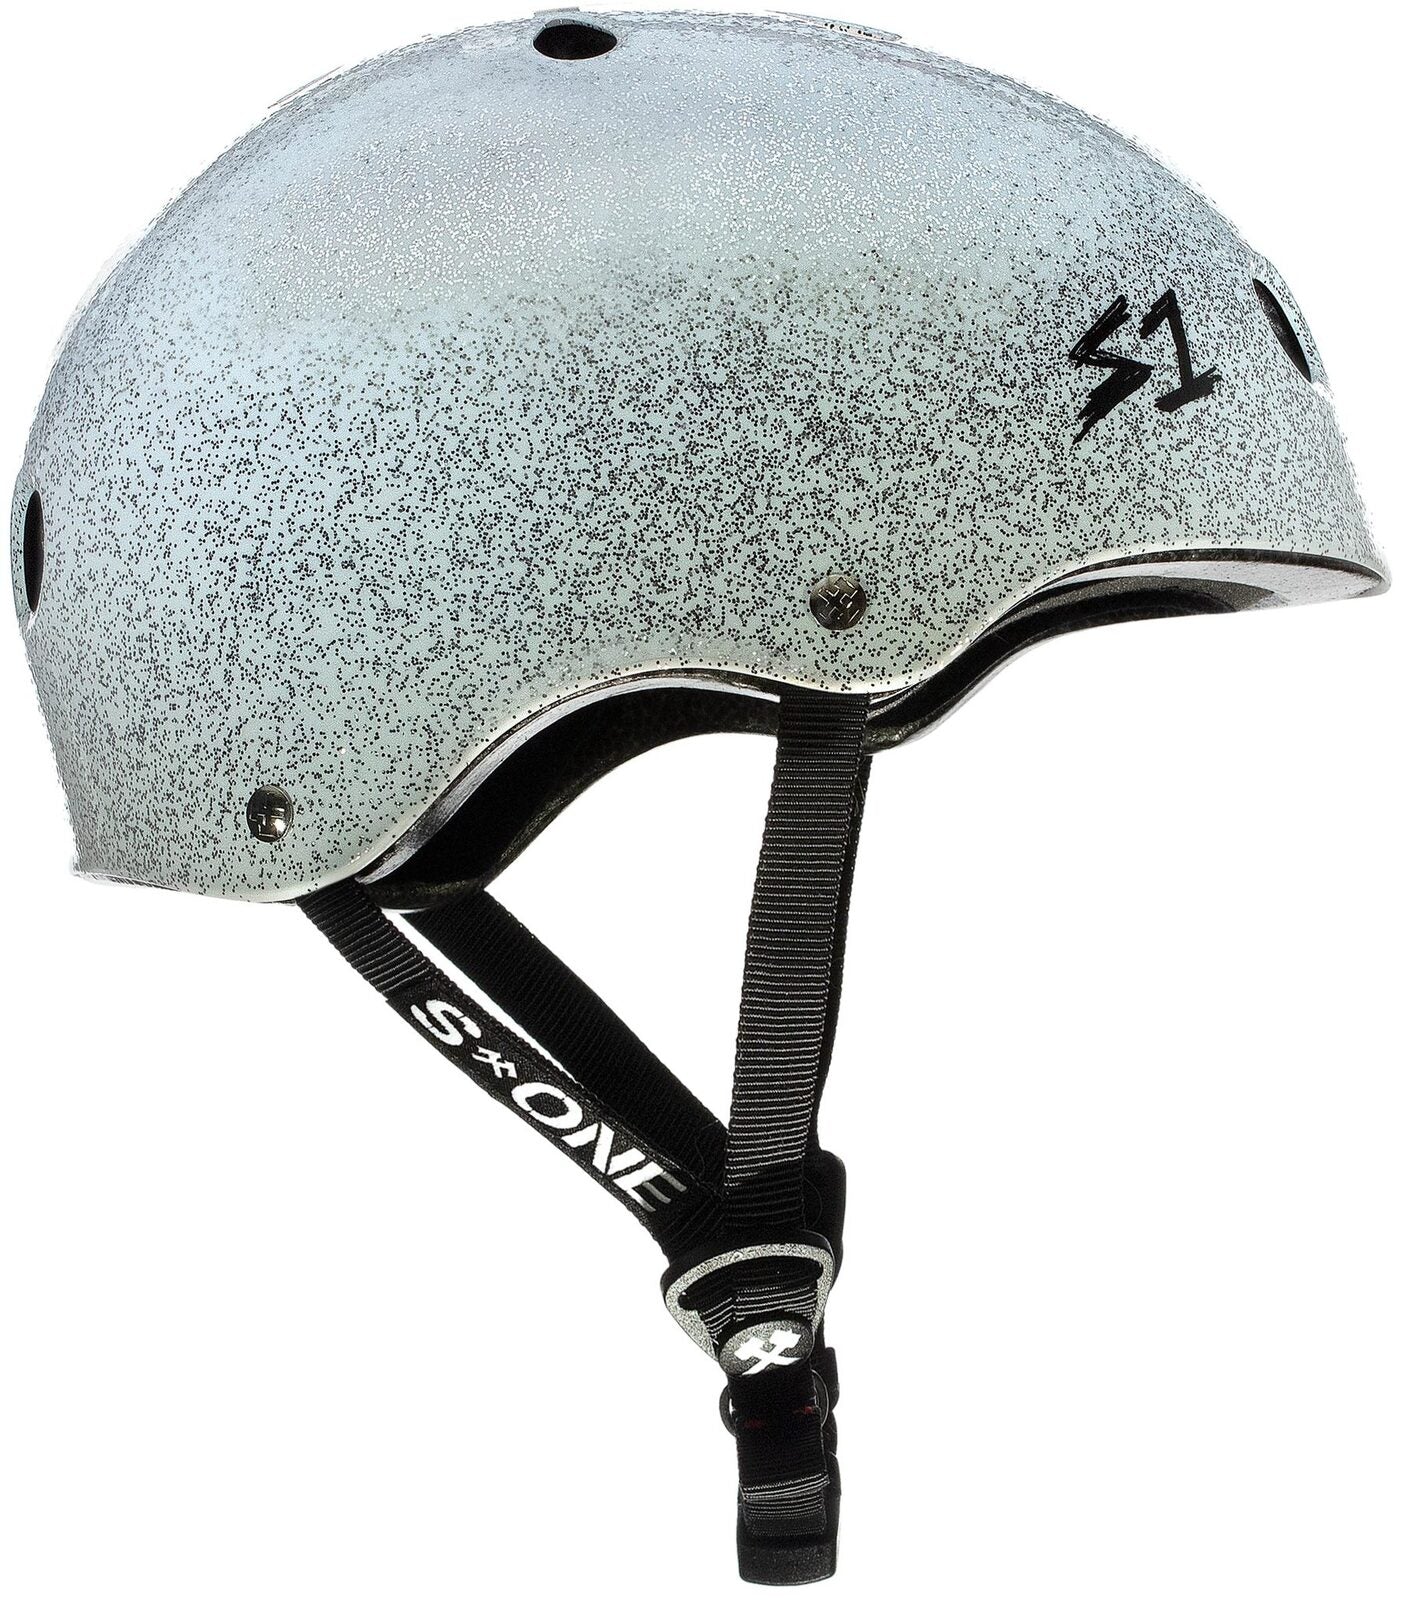 S1 Lifer Helmet Glitter White Metal Flake